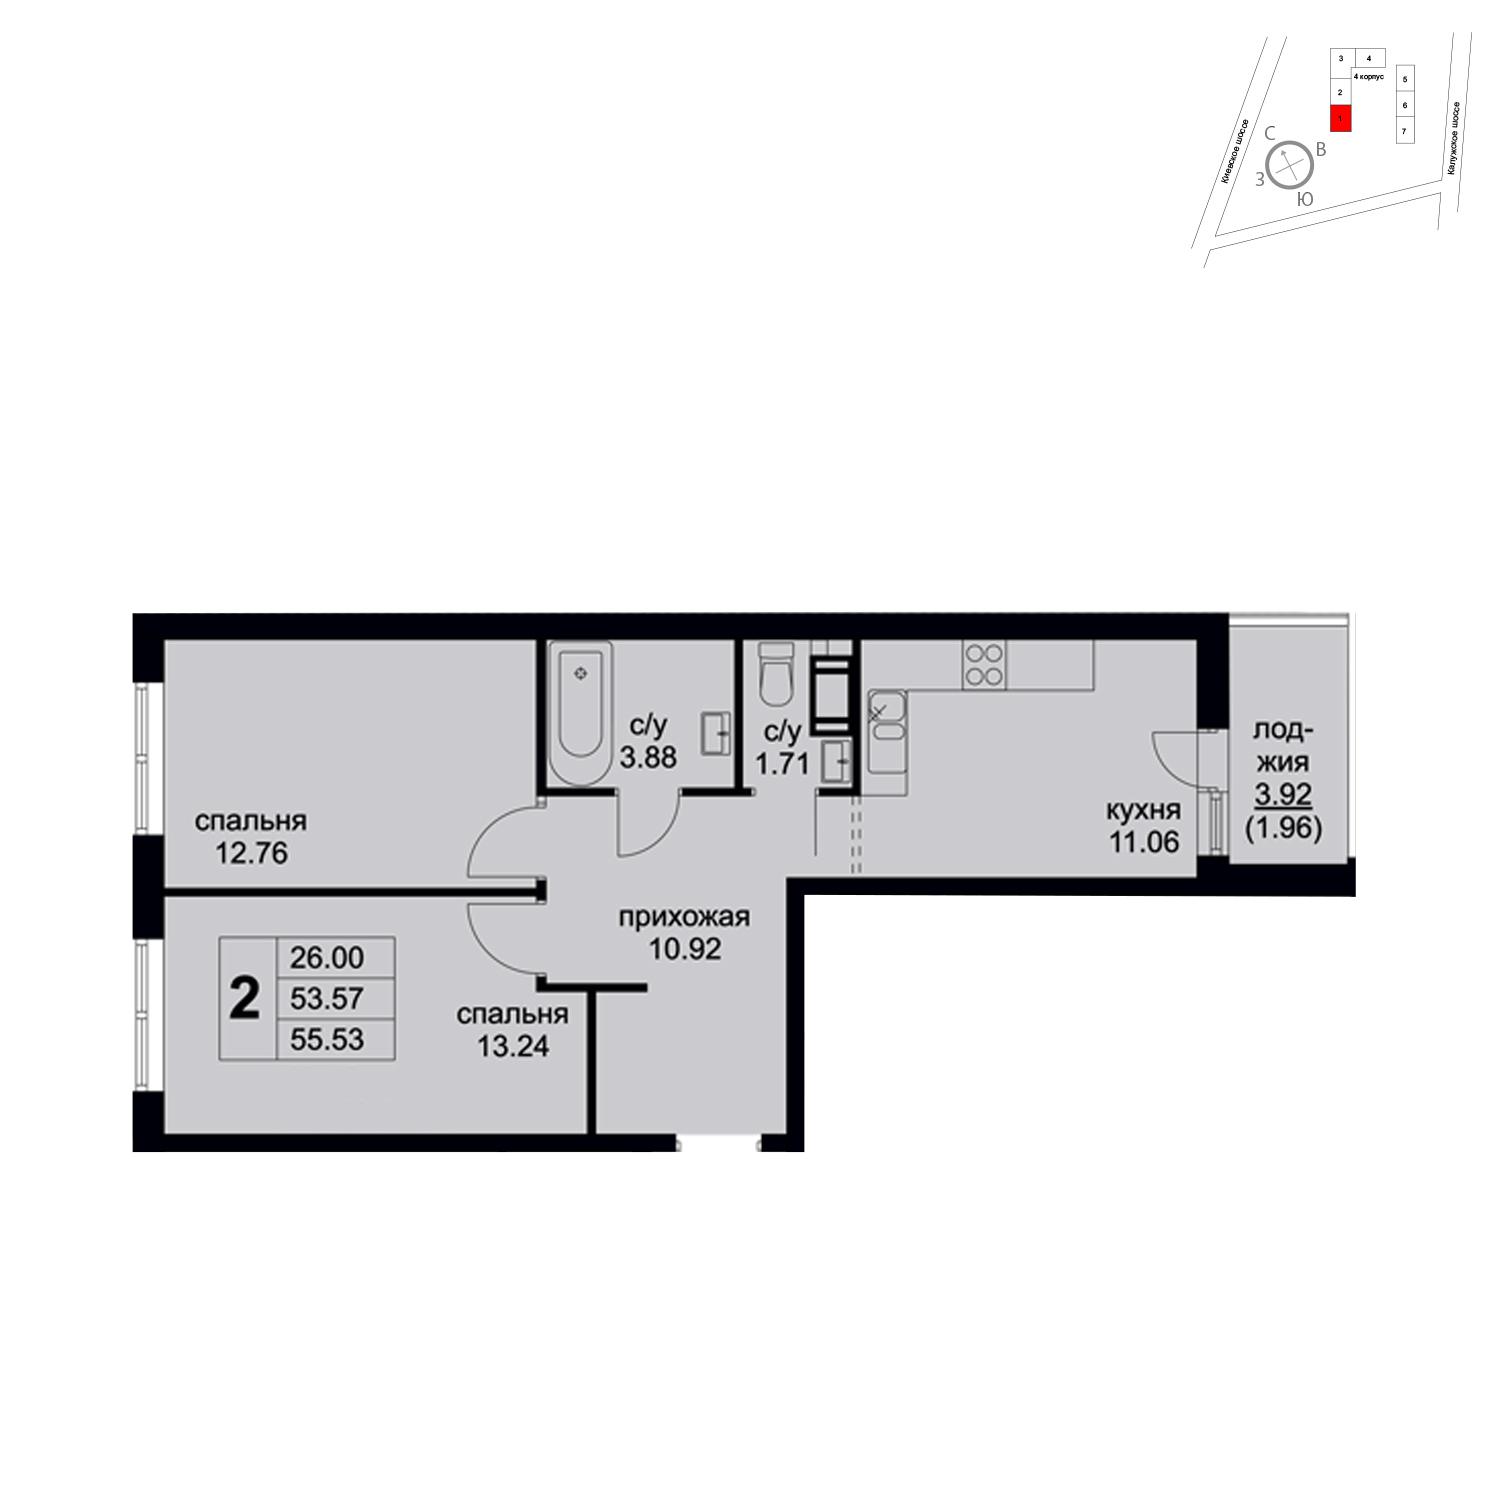 Продаётся 2-комнатная квартира в новостройке 55.5 кв.м. этаж 6/8 за 6 527 552 руб 